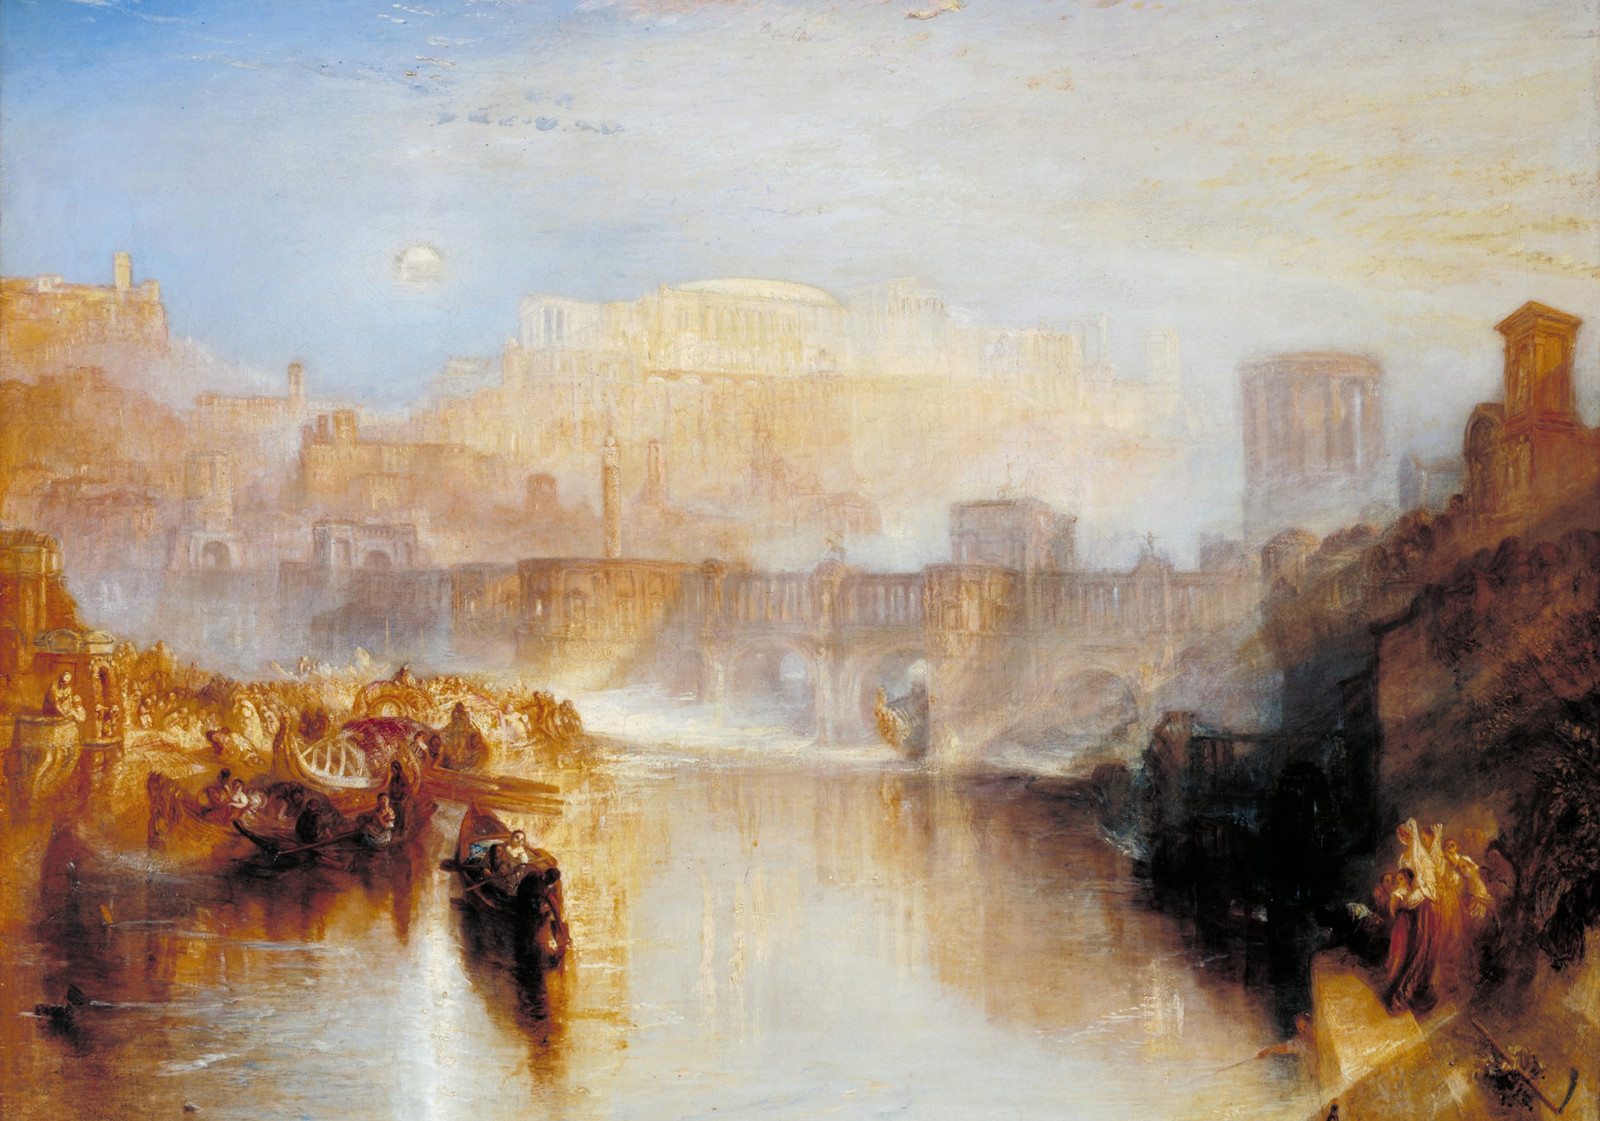 川, 風景, 画像, ボート, ブリッジ, 古代ローマ, ジャンル, ウィリアム・ターナー